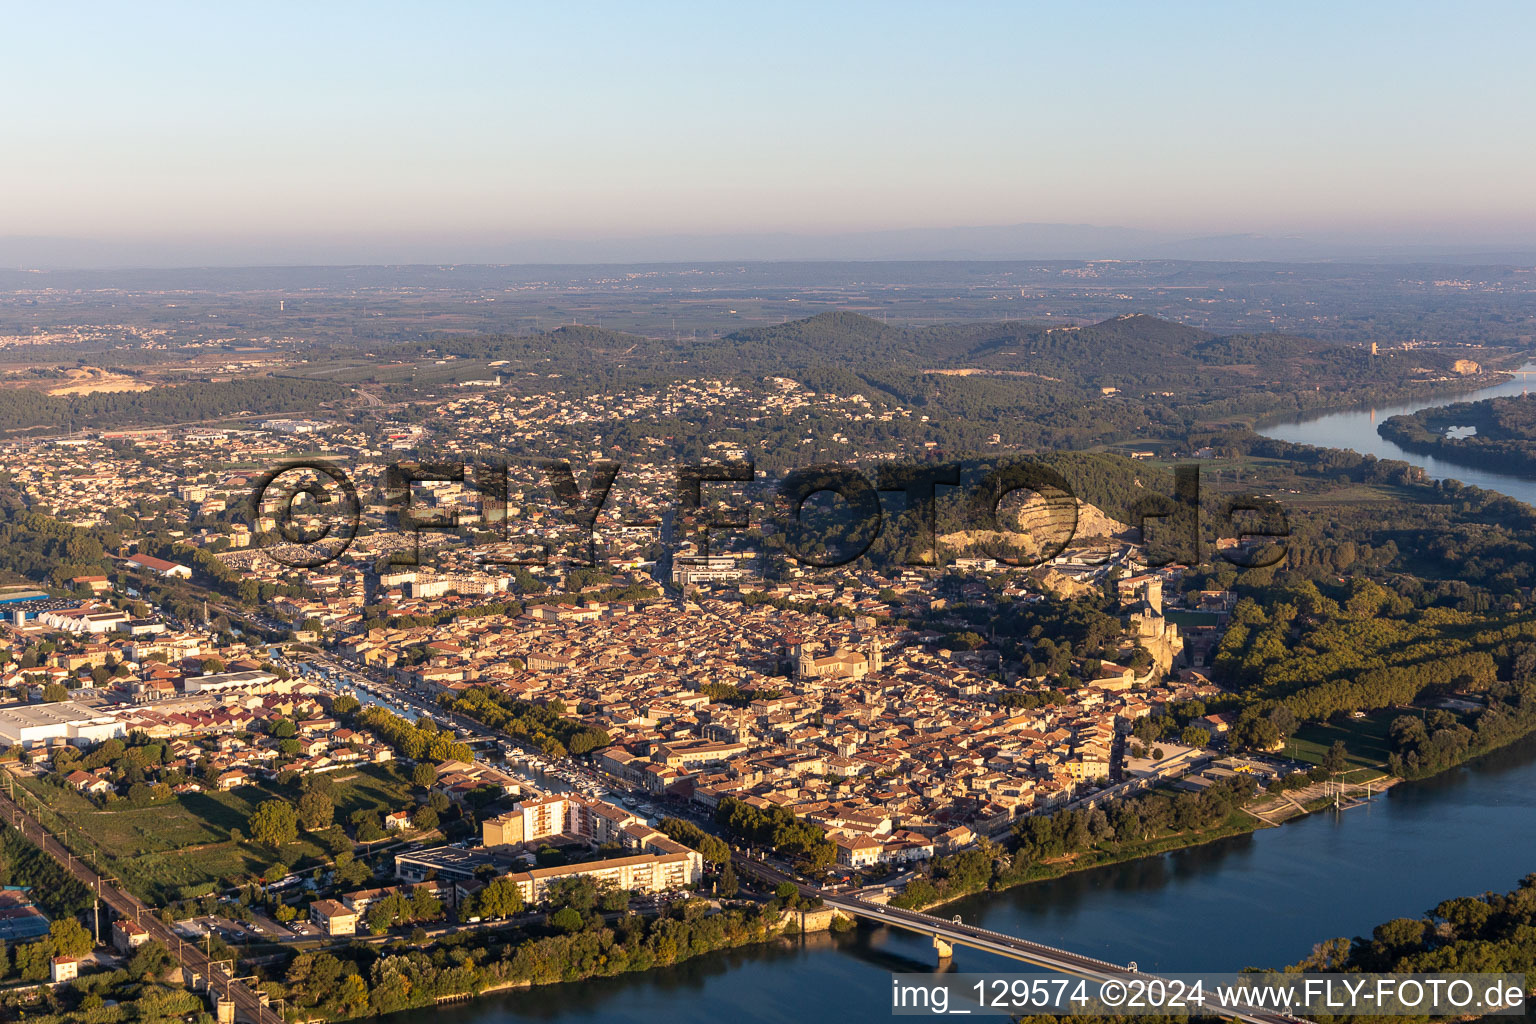 Vue aérienne de Zone des berges du Rhône en Occitanie à Beaucaire dans le département Gard, France